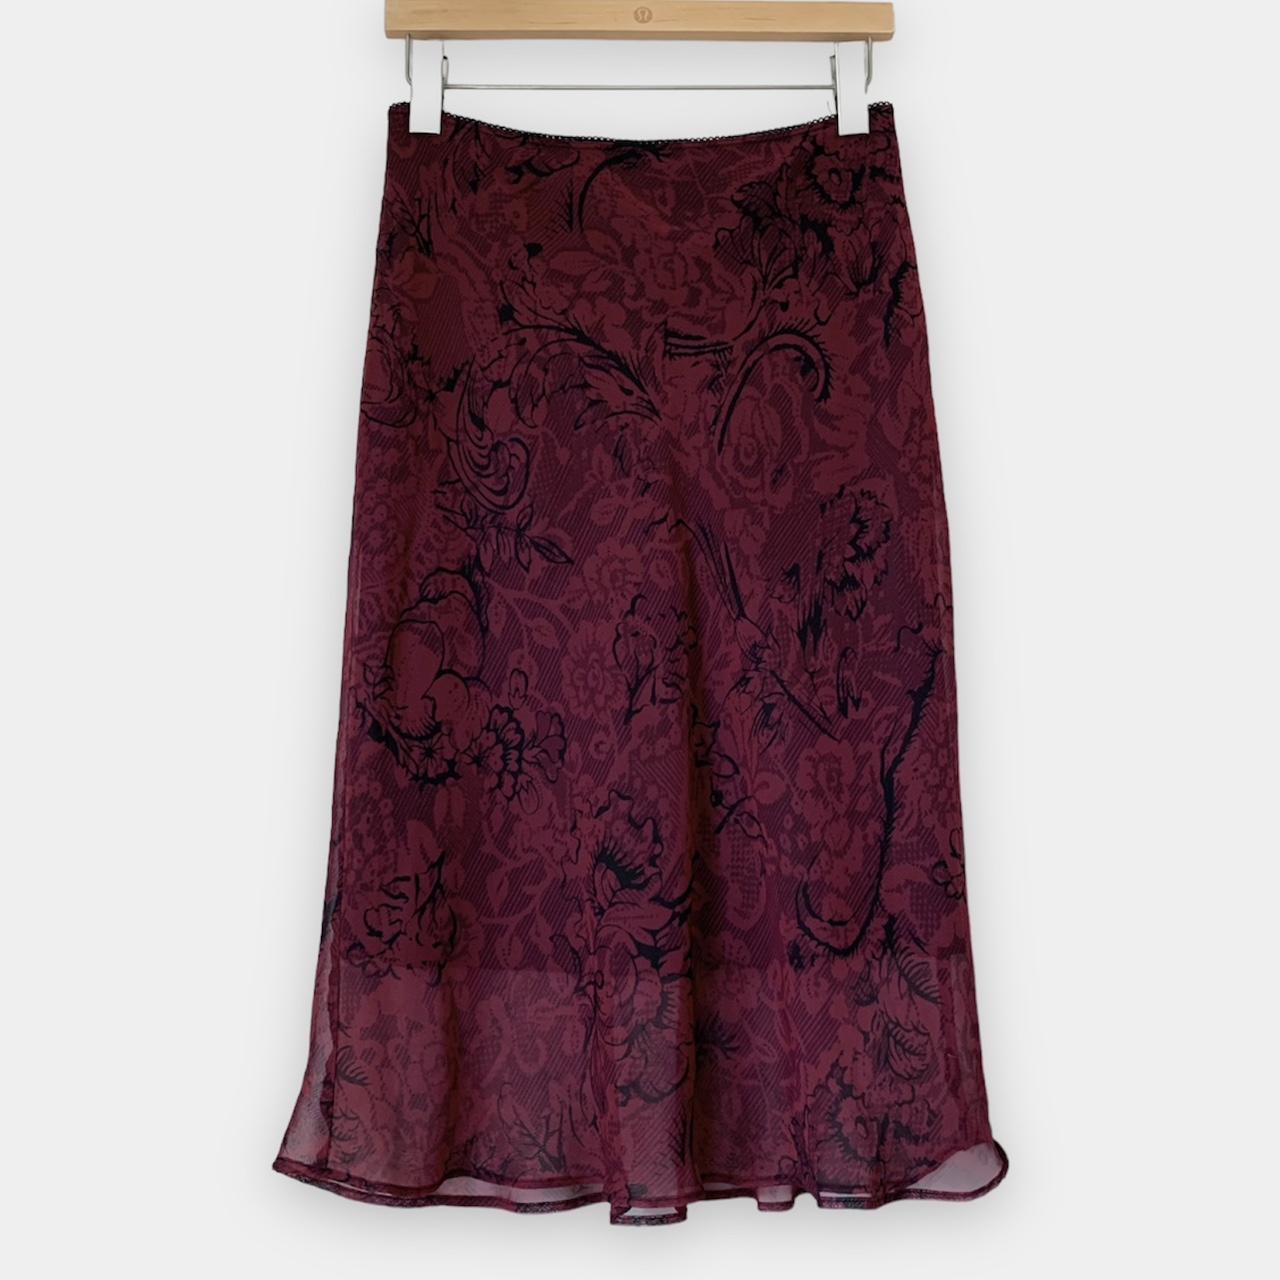 90s Burgundy Sheer Mesh Overlay Midi Skirt. Subtle... - Depop